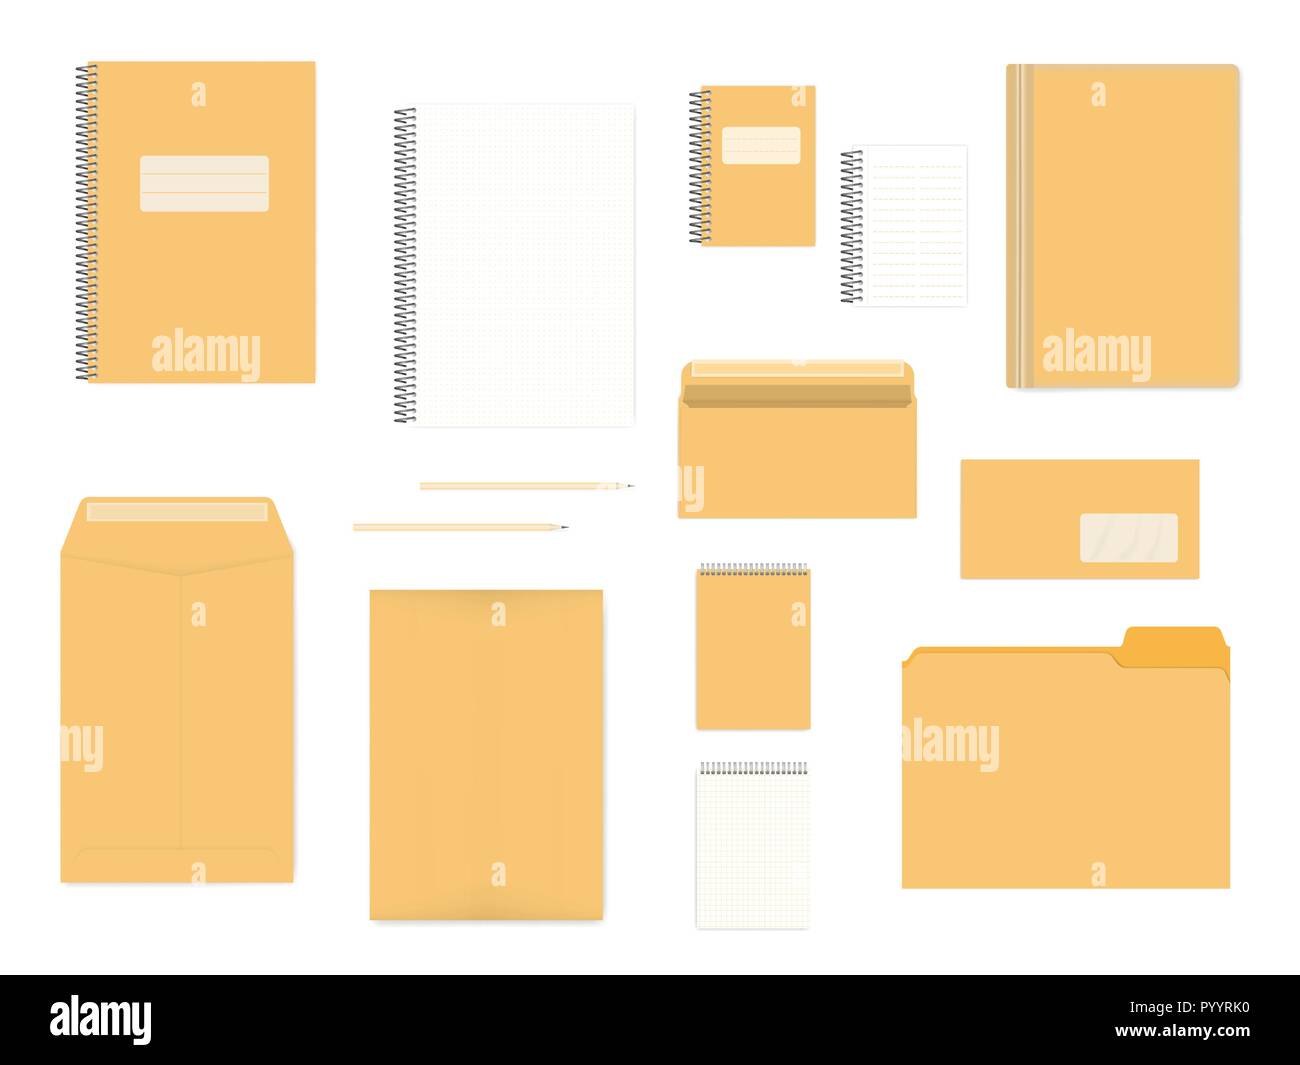 Vuoto articoli di cancelleria isolati su sfondo bianco, mock up set. A4, A6, DL dimensioni. Identità aziendale modello di prodotti Illustrazione Vettoriale